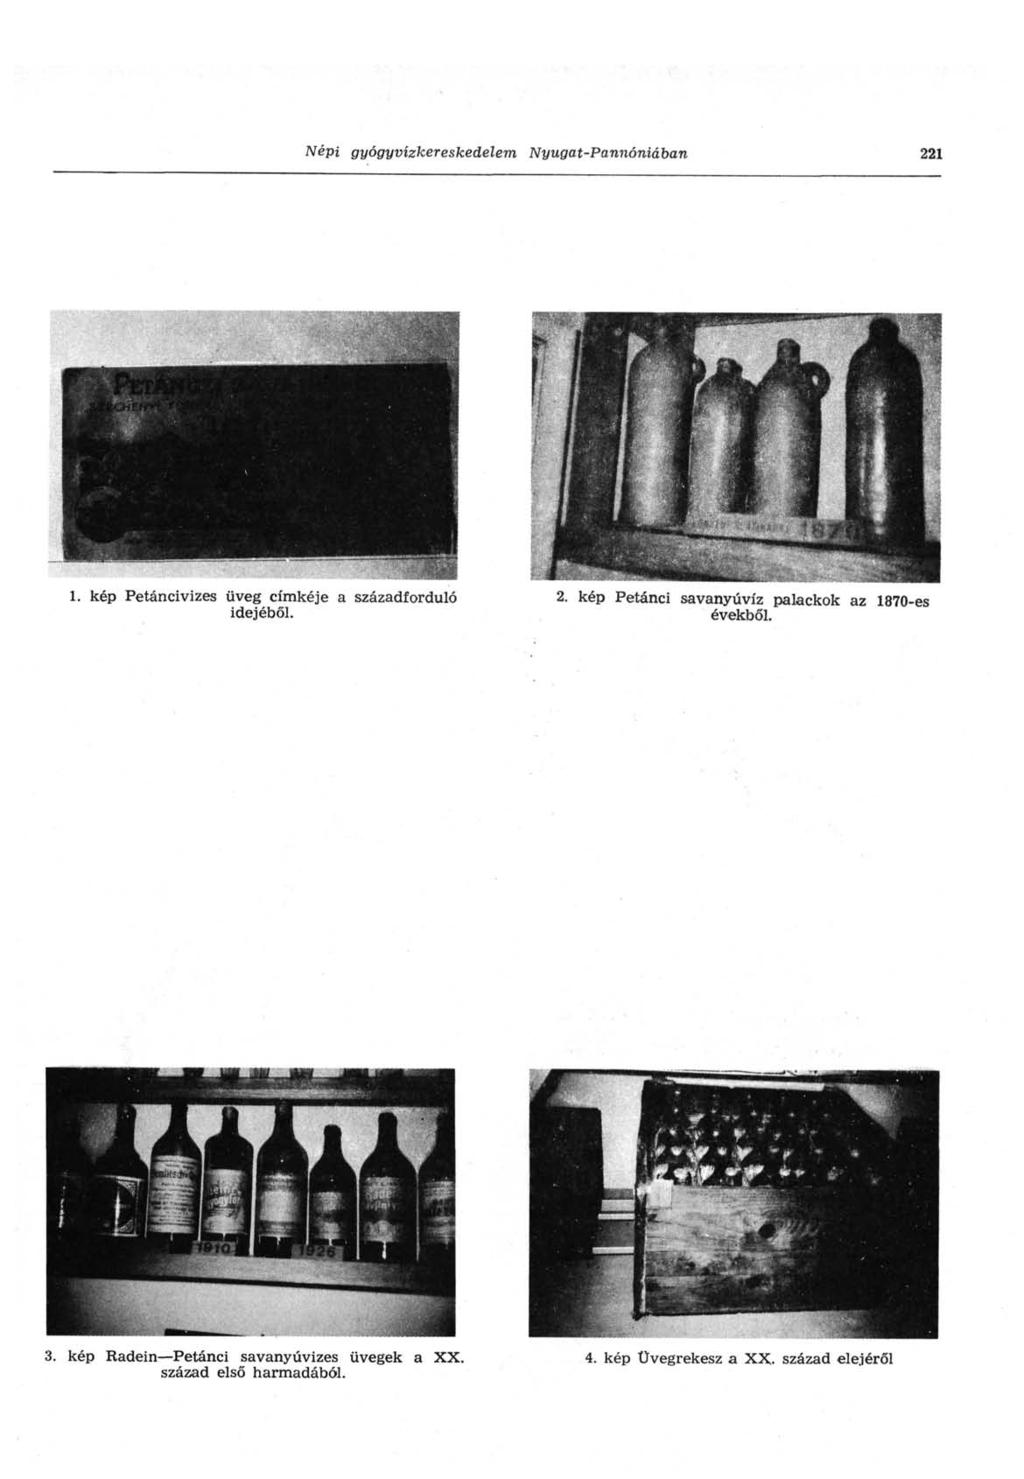 Népi gyógyvízkereskedelem Nyugat-Pannóniában 221 1. kép Petánci vizes üveg címkéje a századforduló idejéből. 2. kép Petánci savanyúvíz palackok az 1870-es évekből.